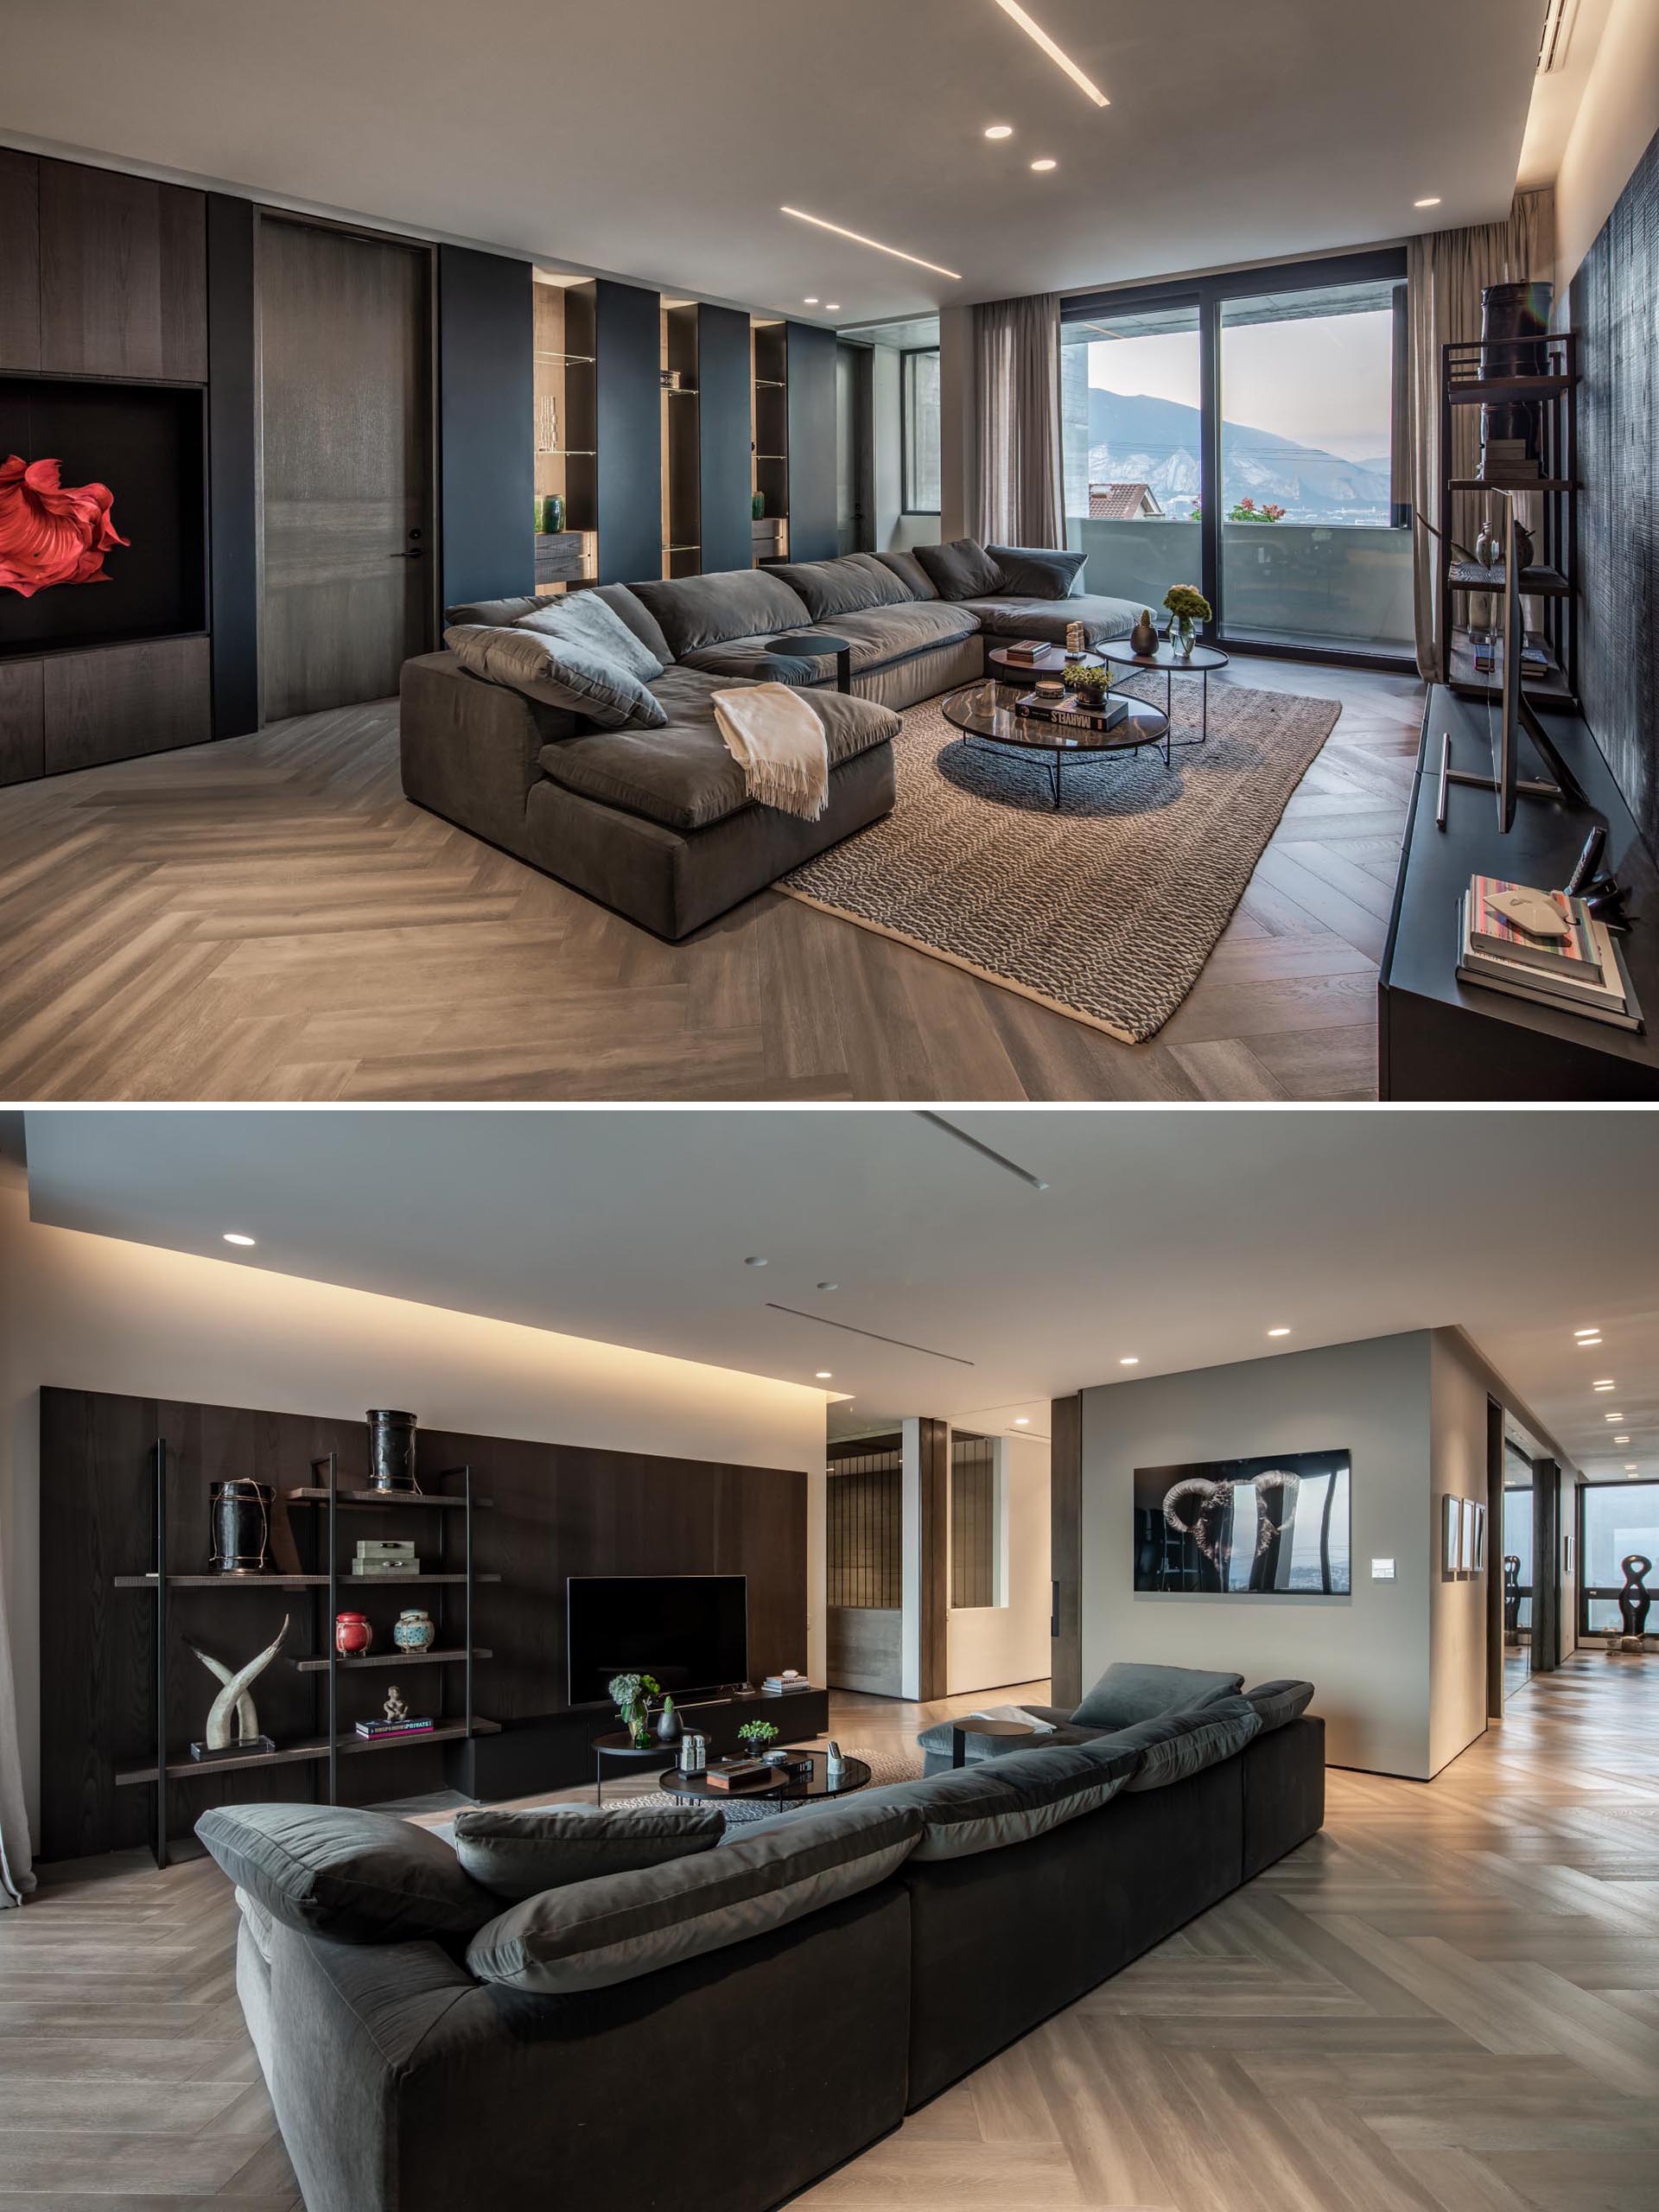 This modern living room features wood floors in a herringbone pattern.